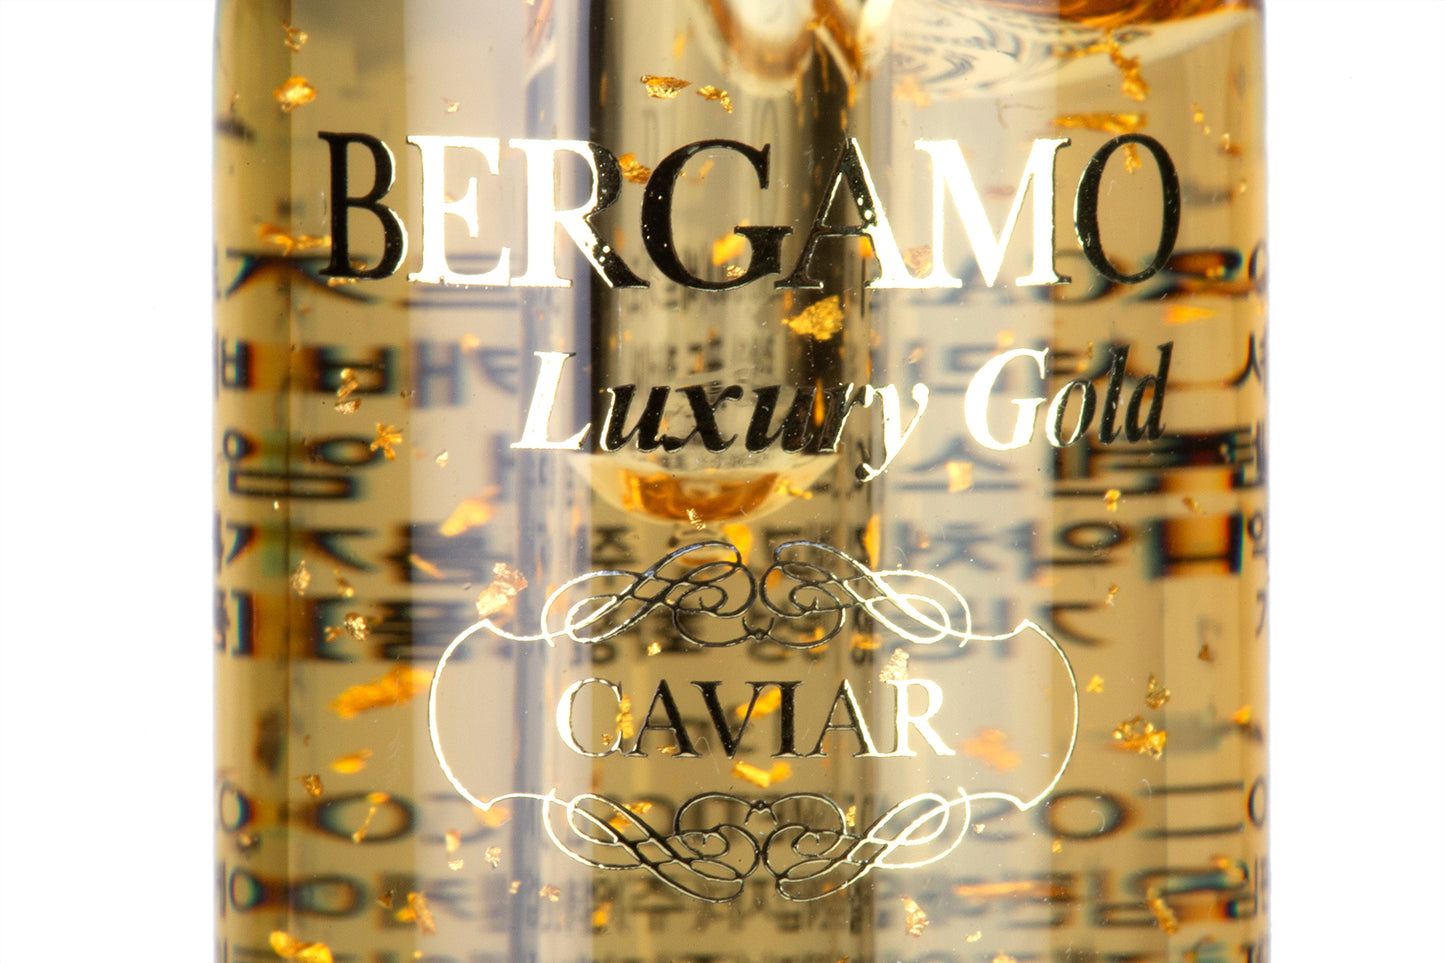 Set de 4 Fiole cu Colagen și Caviar,13ml x 4, BERGAMO LUXORY GOLD